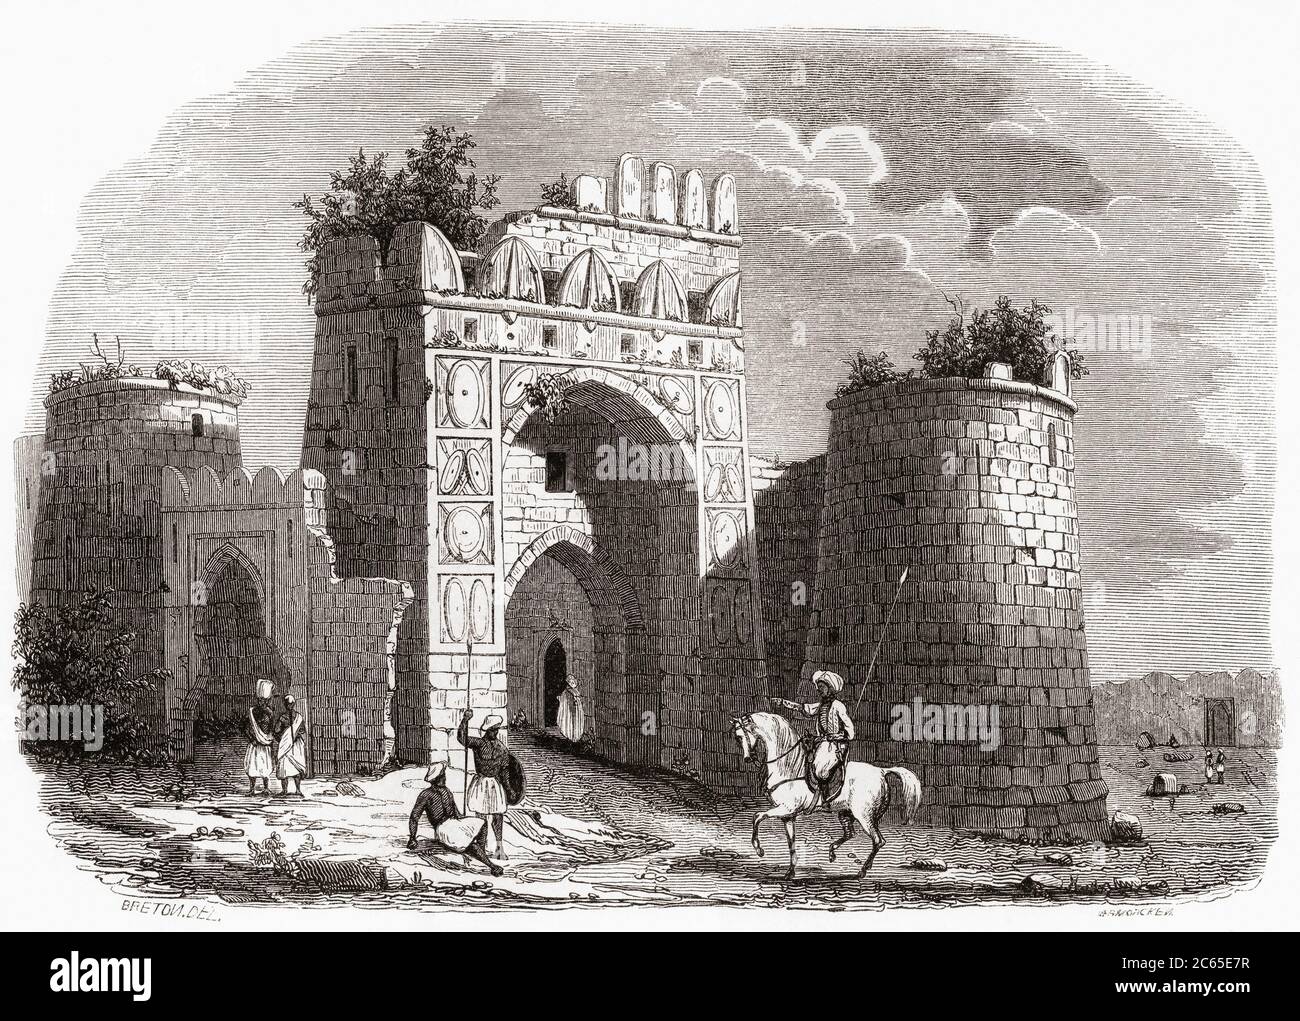 Porta del Feroz Shah Kotla, o Kotla, vicino Delhi, India, visto qui nel 19 ° secolo. Una fortezza costruita dal sultano Feroz Shah Tughlaq. Da Monuments de Tous les Peuples, pubblicato nel 1843. Foto Stock